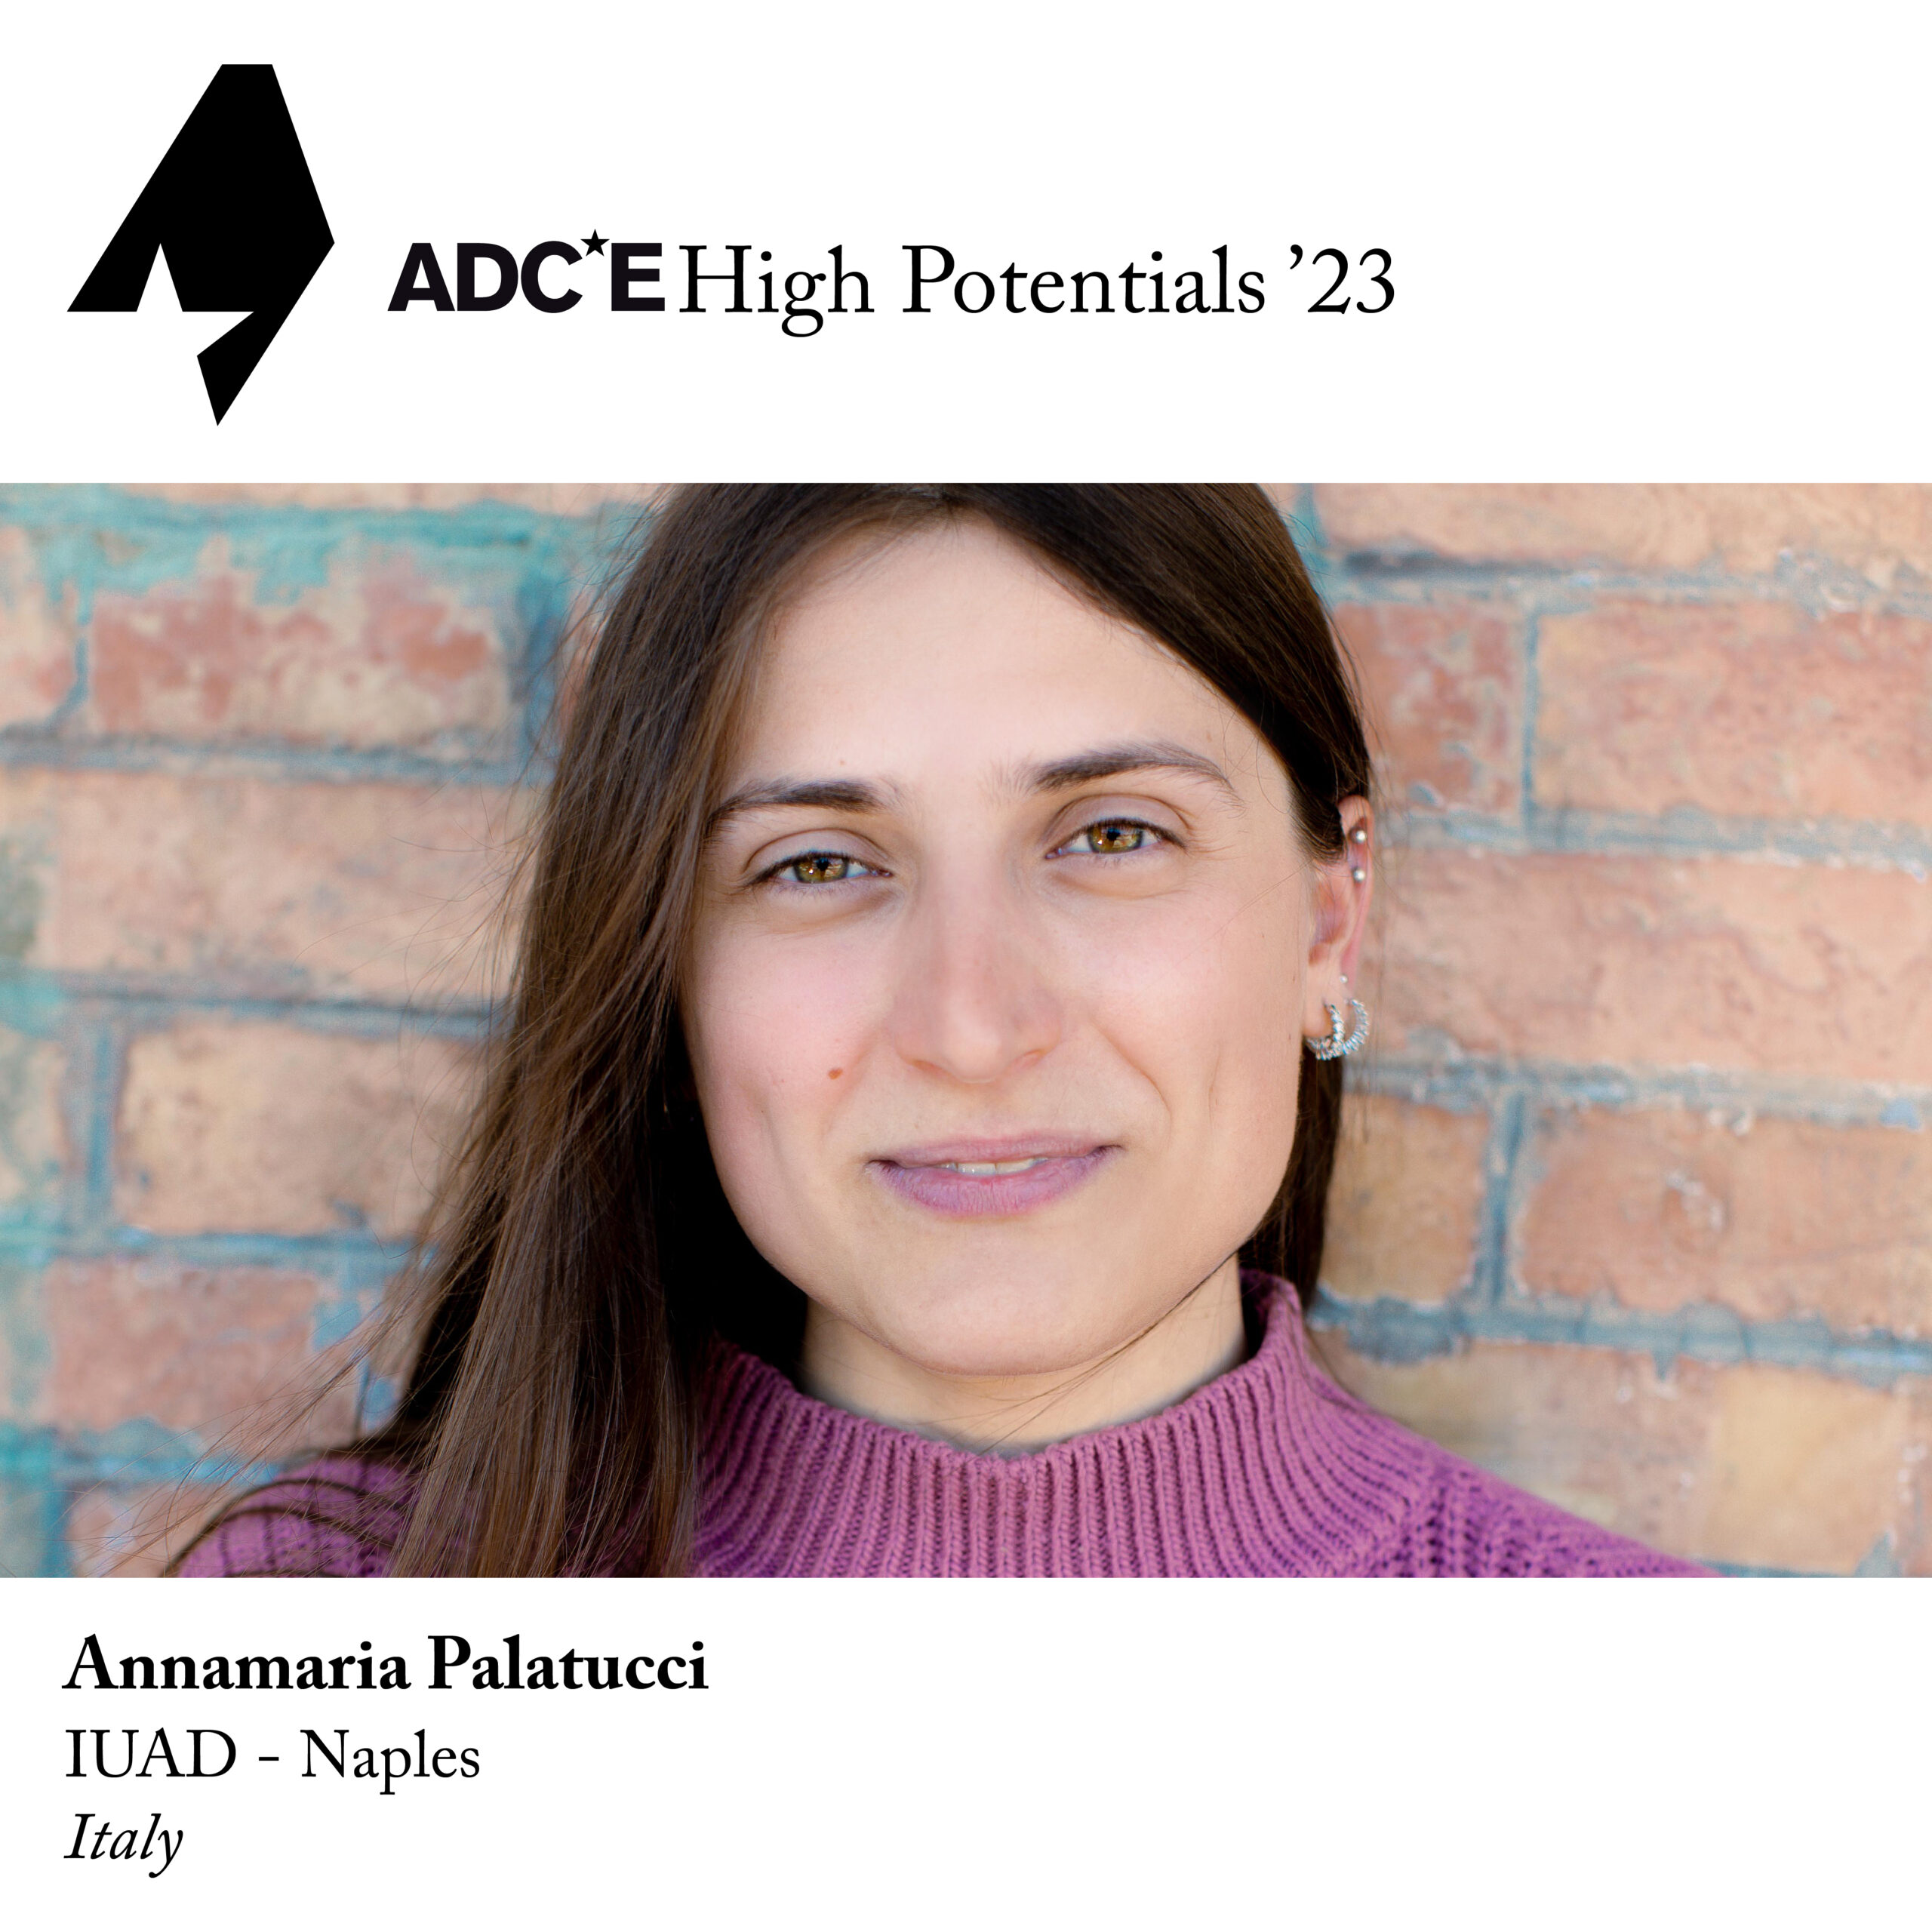 High Potentials Programme seleziona la studentessa Annamaria Palatucci tra i migliori giovani creativi italiani.